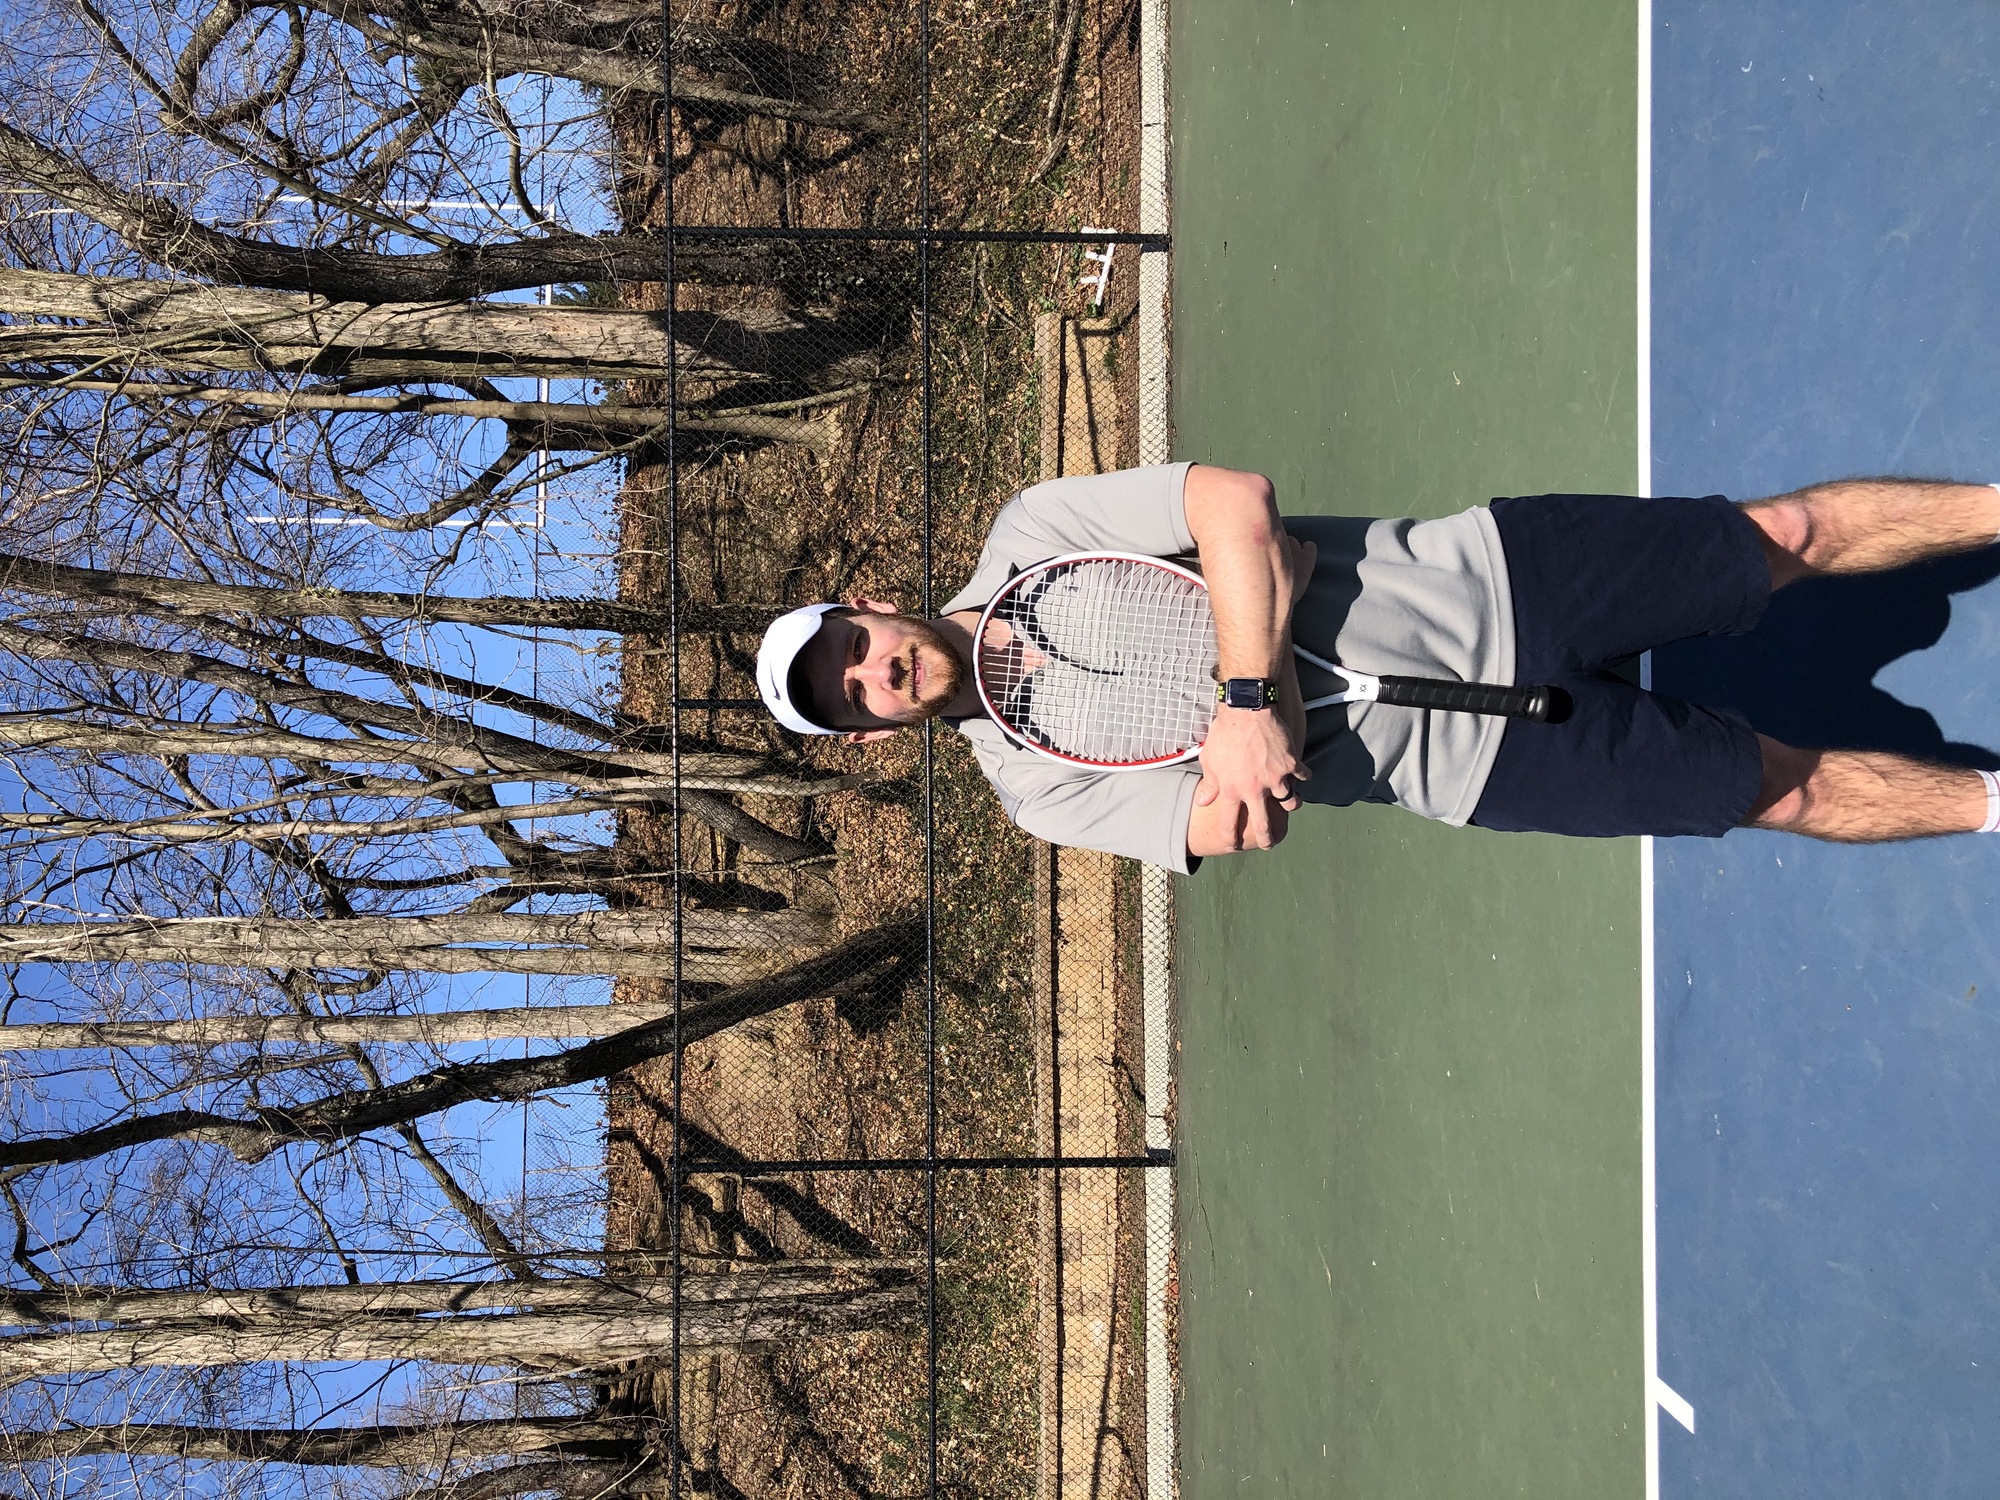 Rob G. teaches tennis lessons in Cinnaminson, NJ